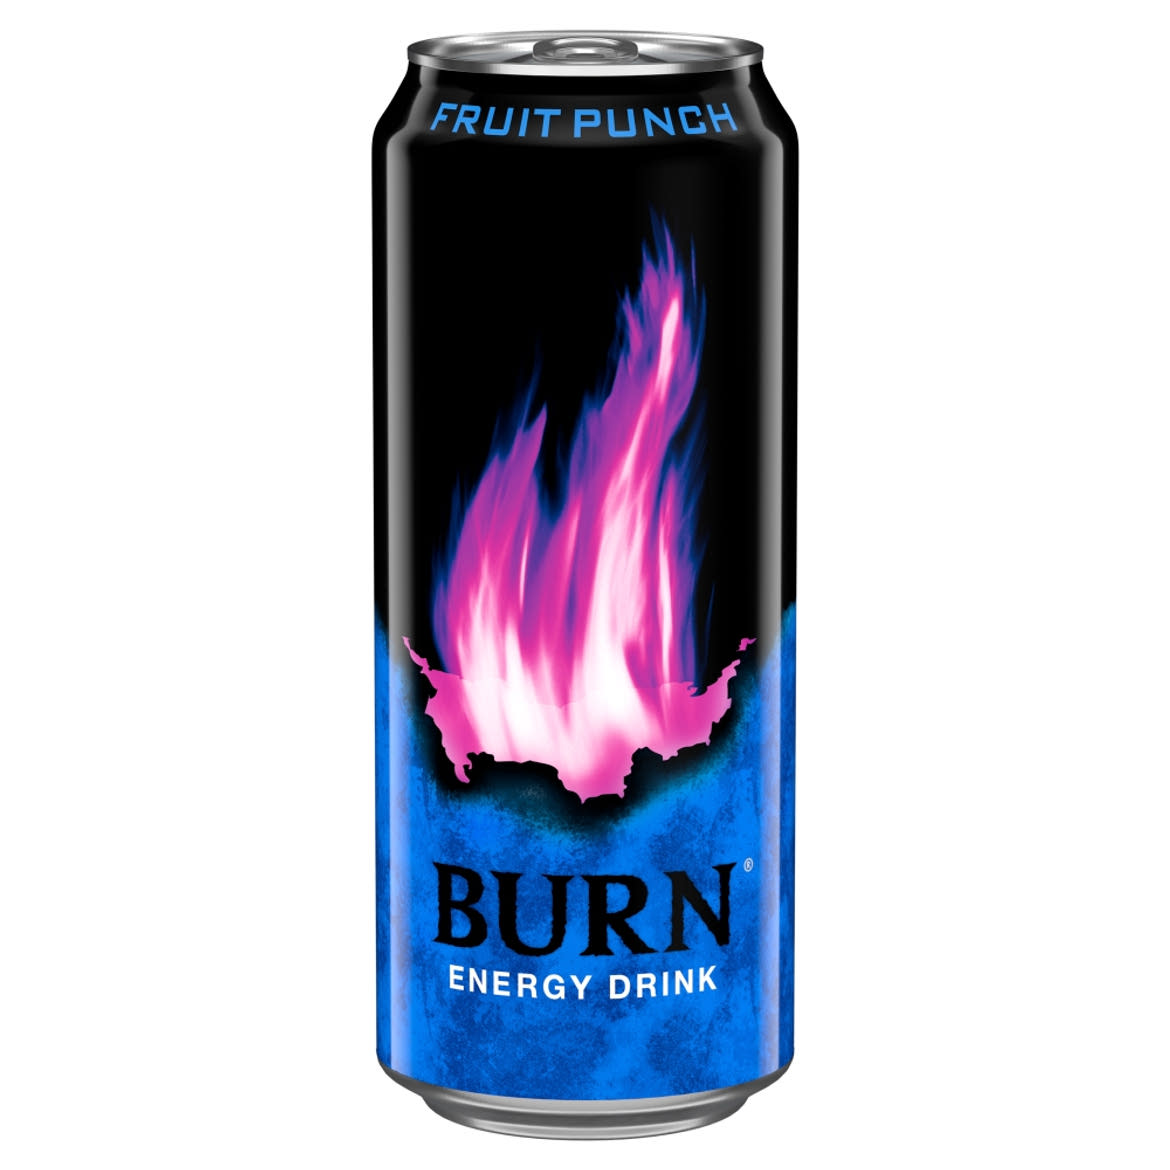 Burn Fruit Punch szénsavas vegyes gyümölcsízű ital, koffeinnel, inozitollal, B-vitaminnal